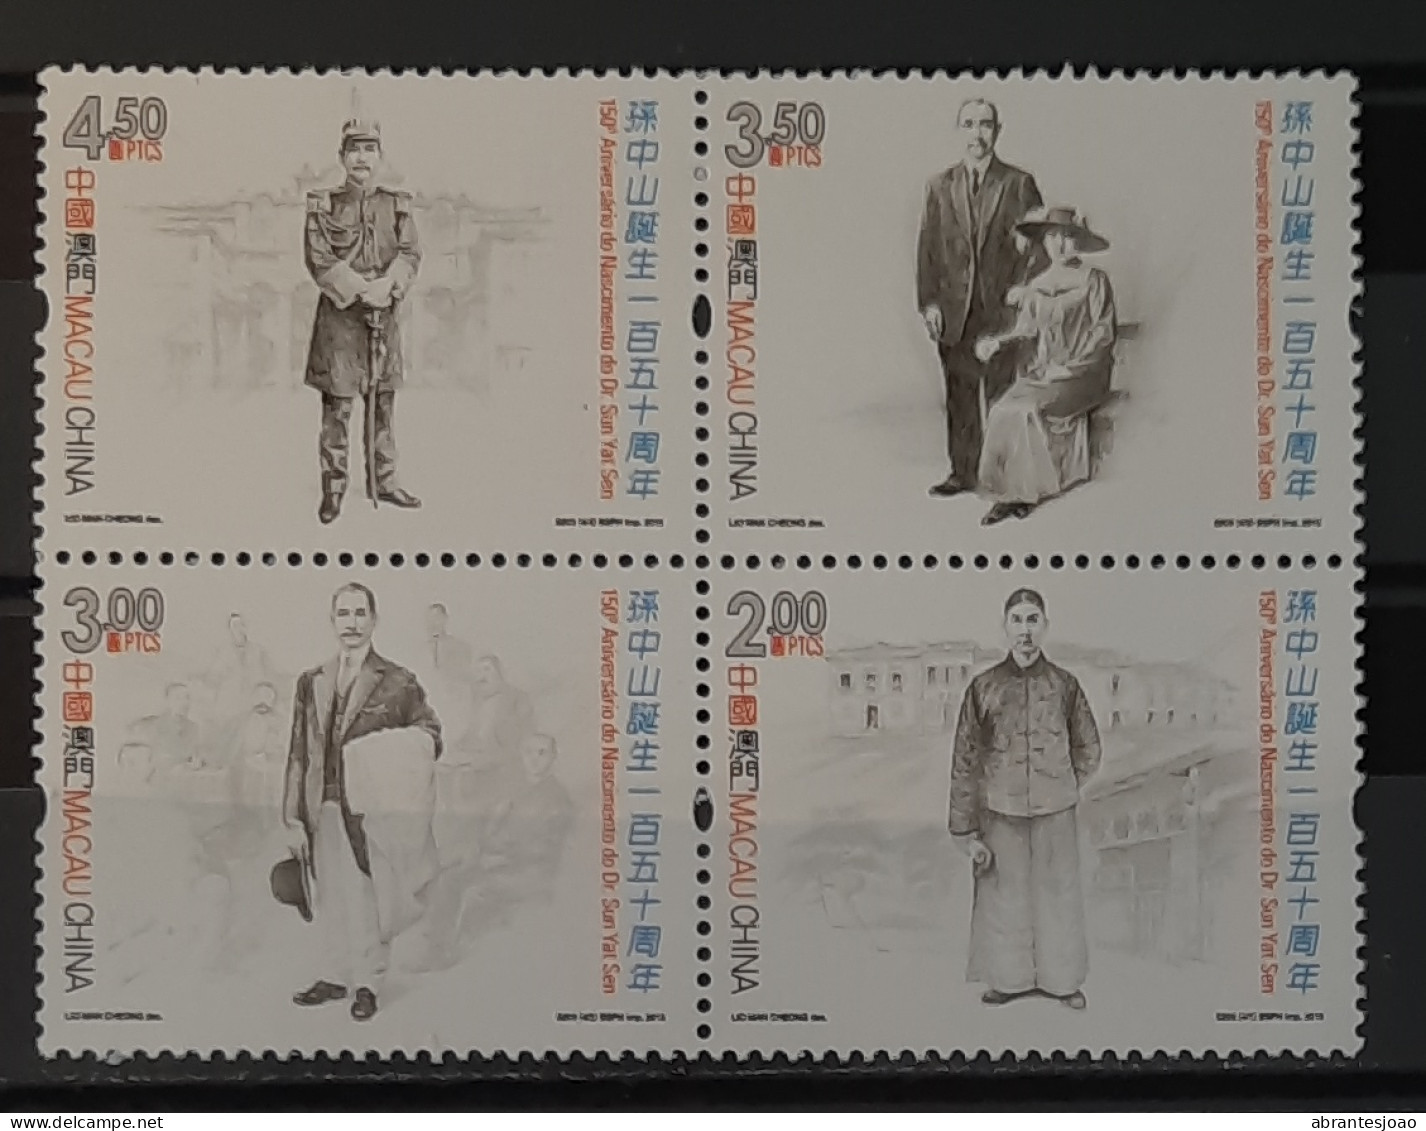 2016 - Macau - MNH - 150th Birthday Of Dr. Sun Yat Sen - Block Of 4 Stamps - Usados